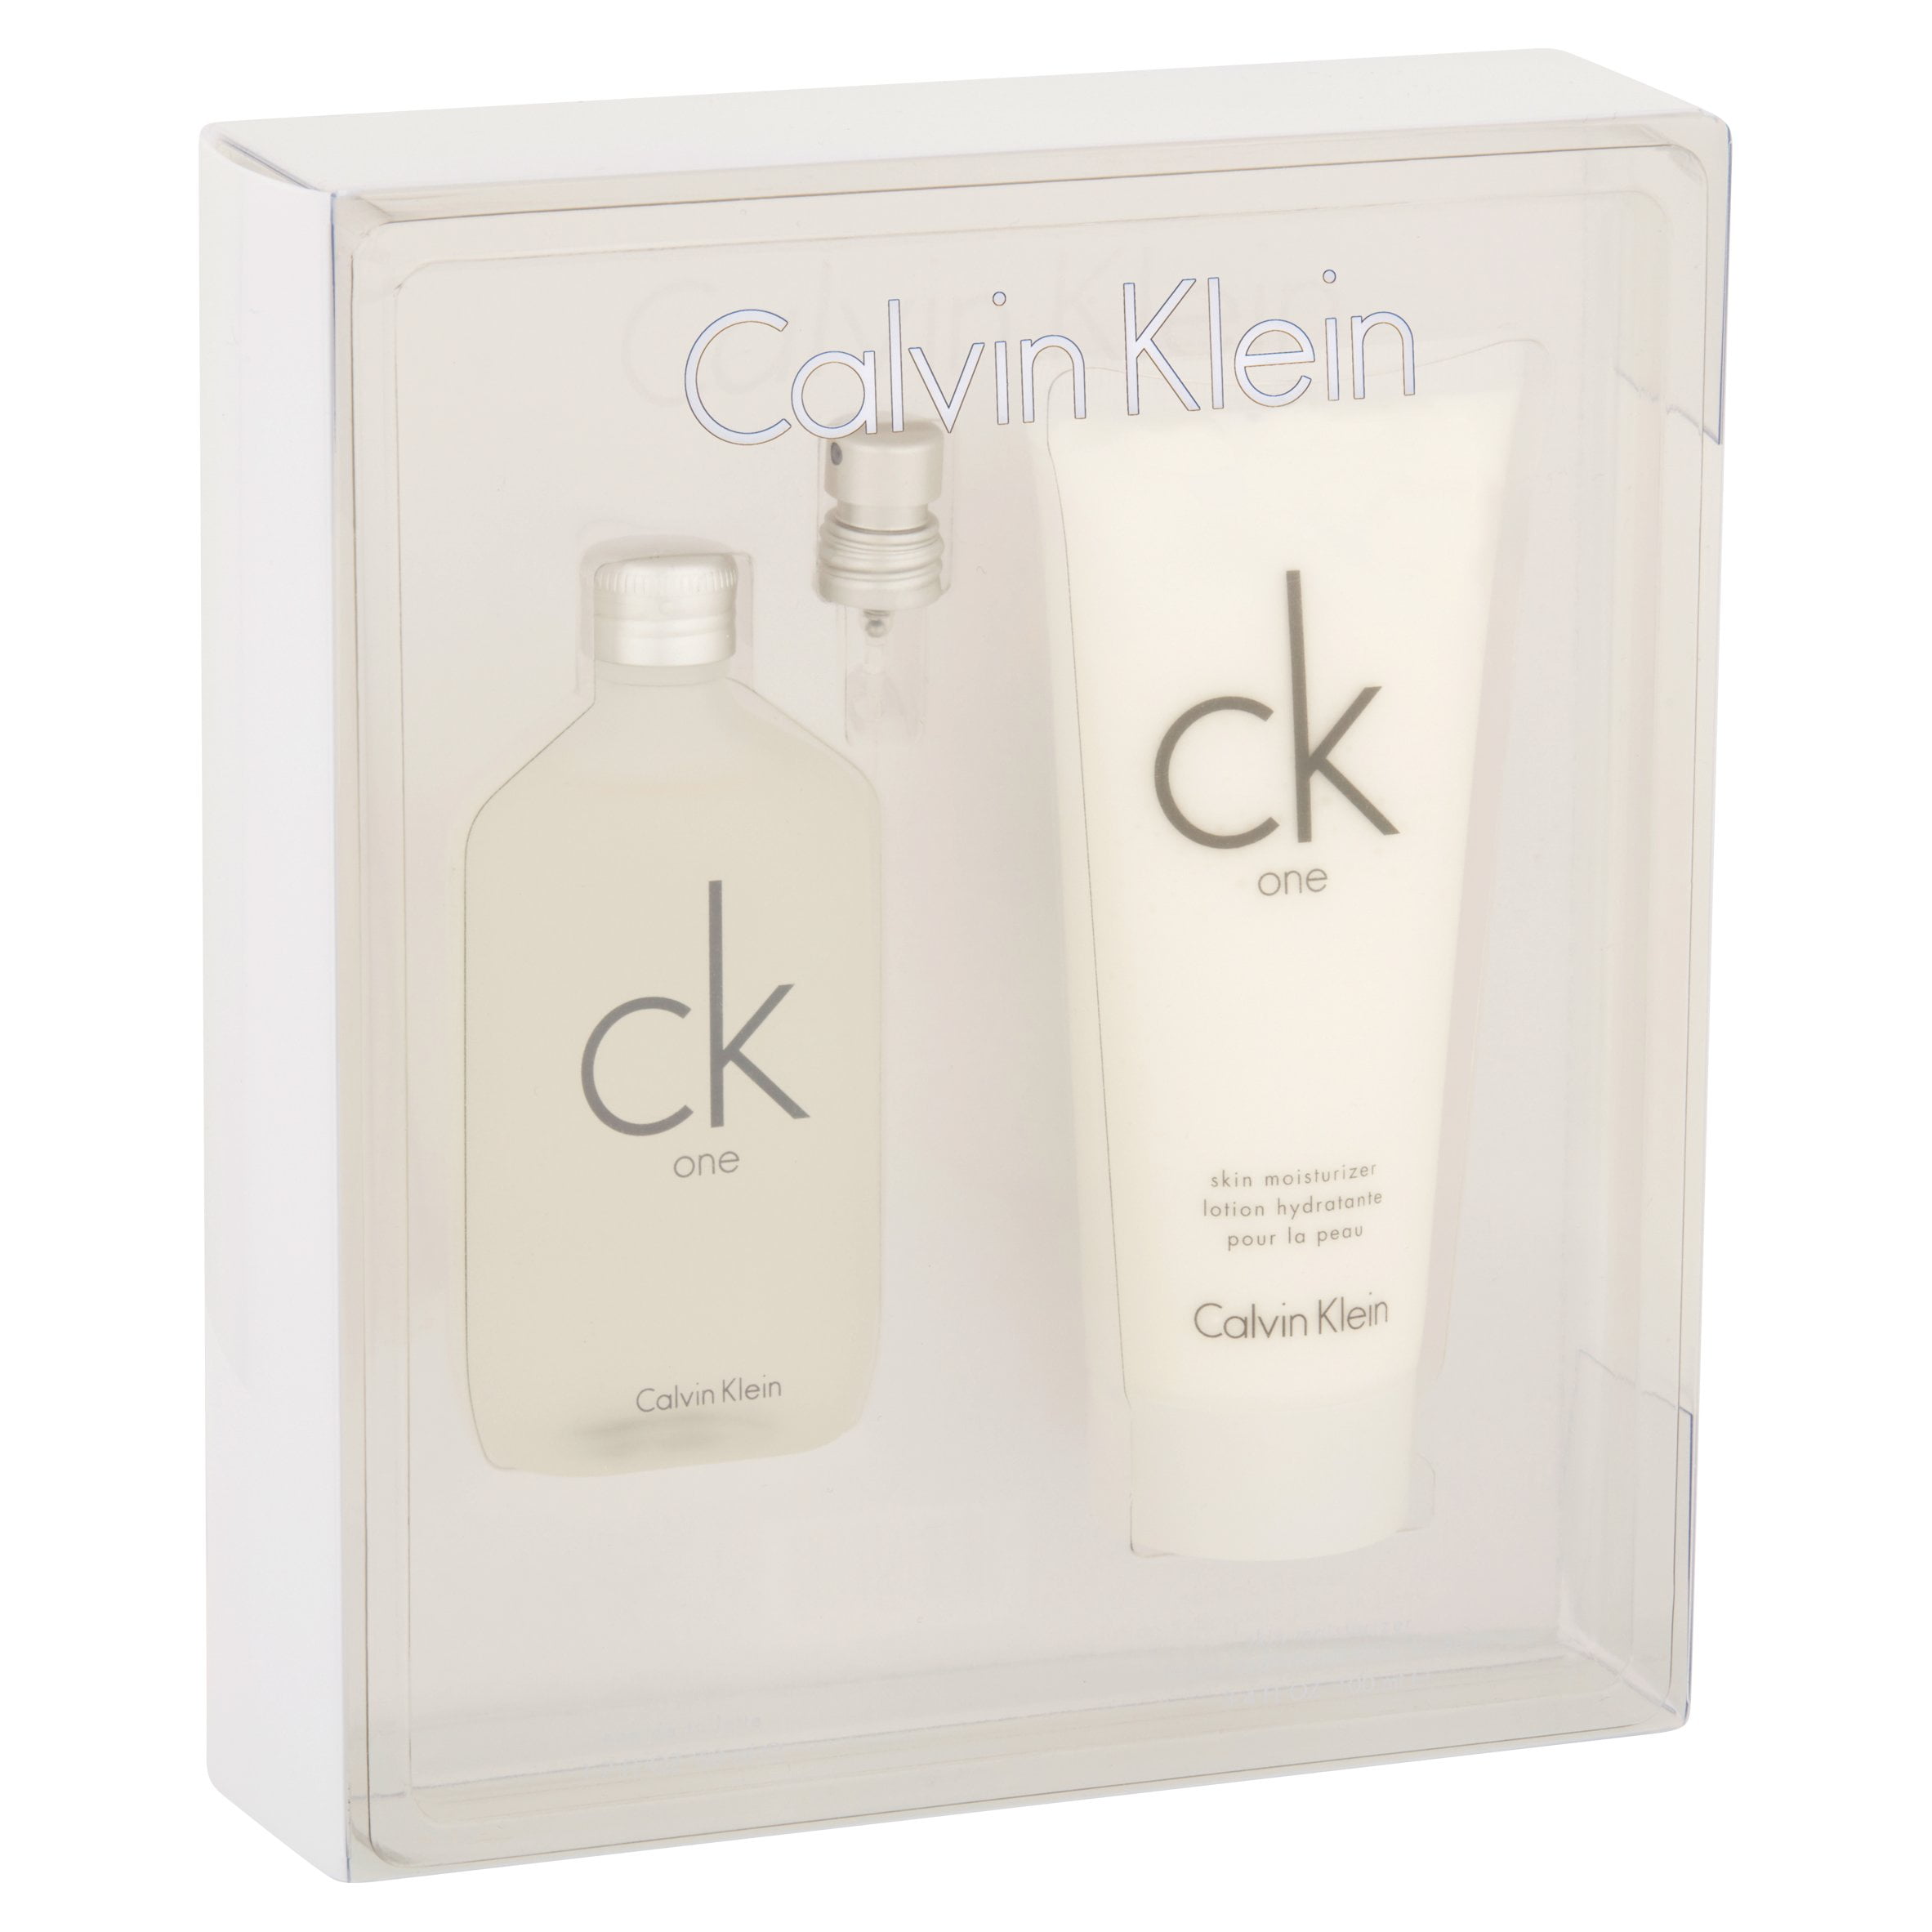 CK One by Calvin Klein, Unisex Gift Set, 2 piece | Duft-Sets